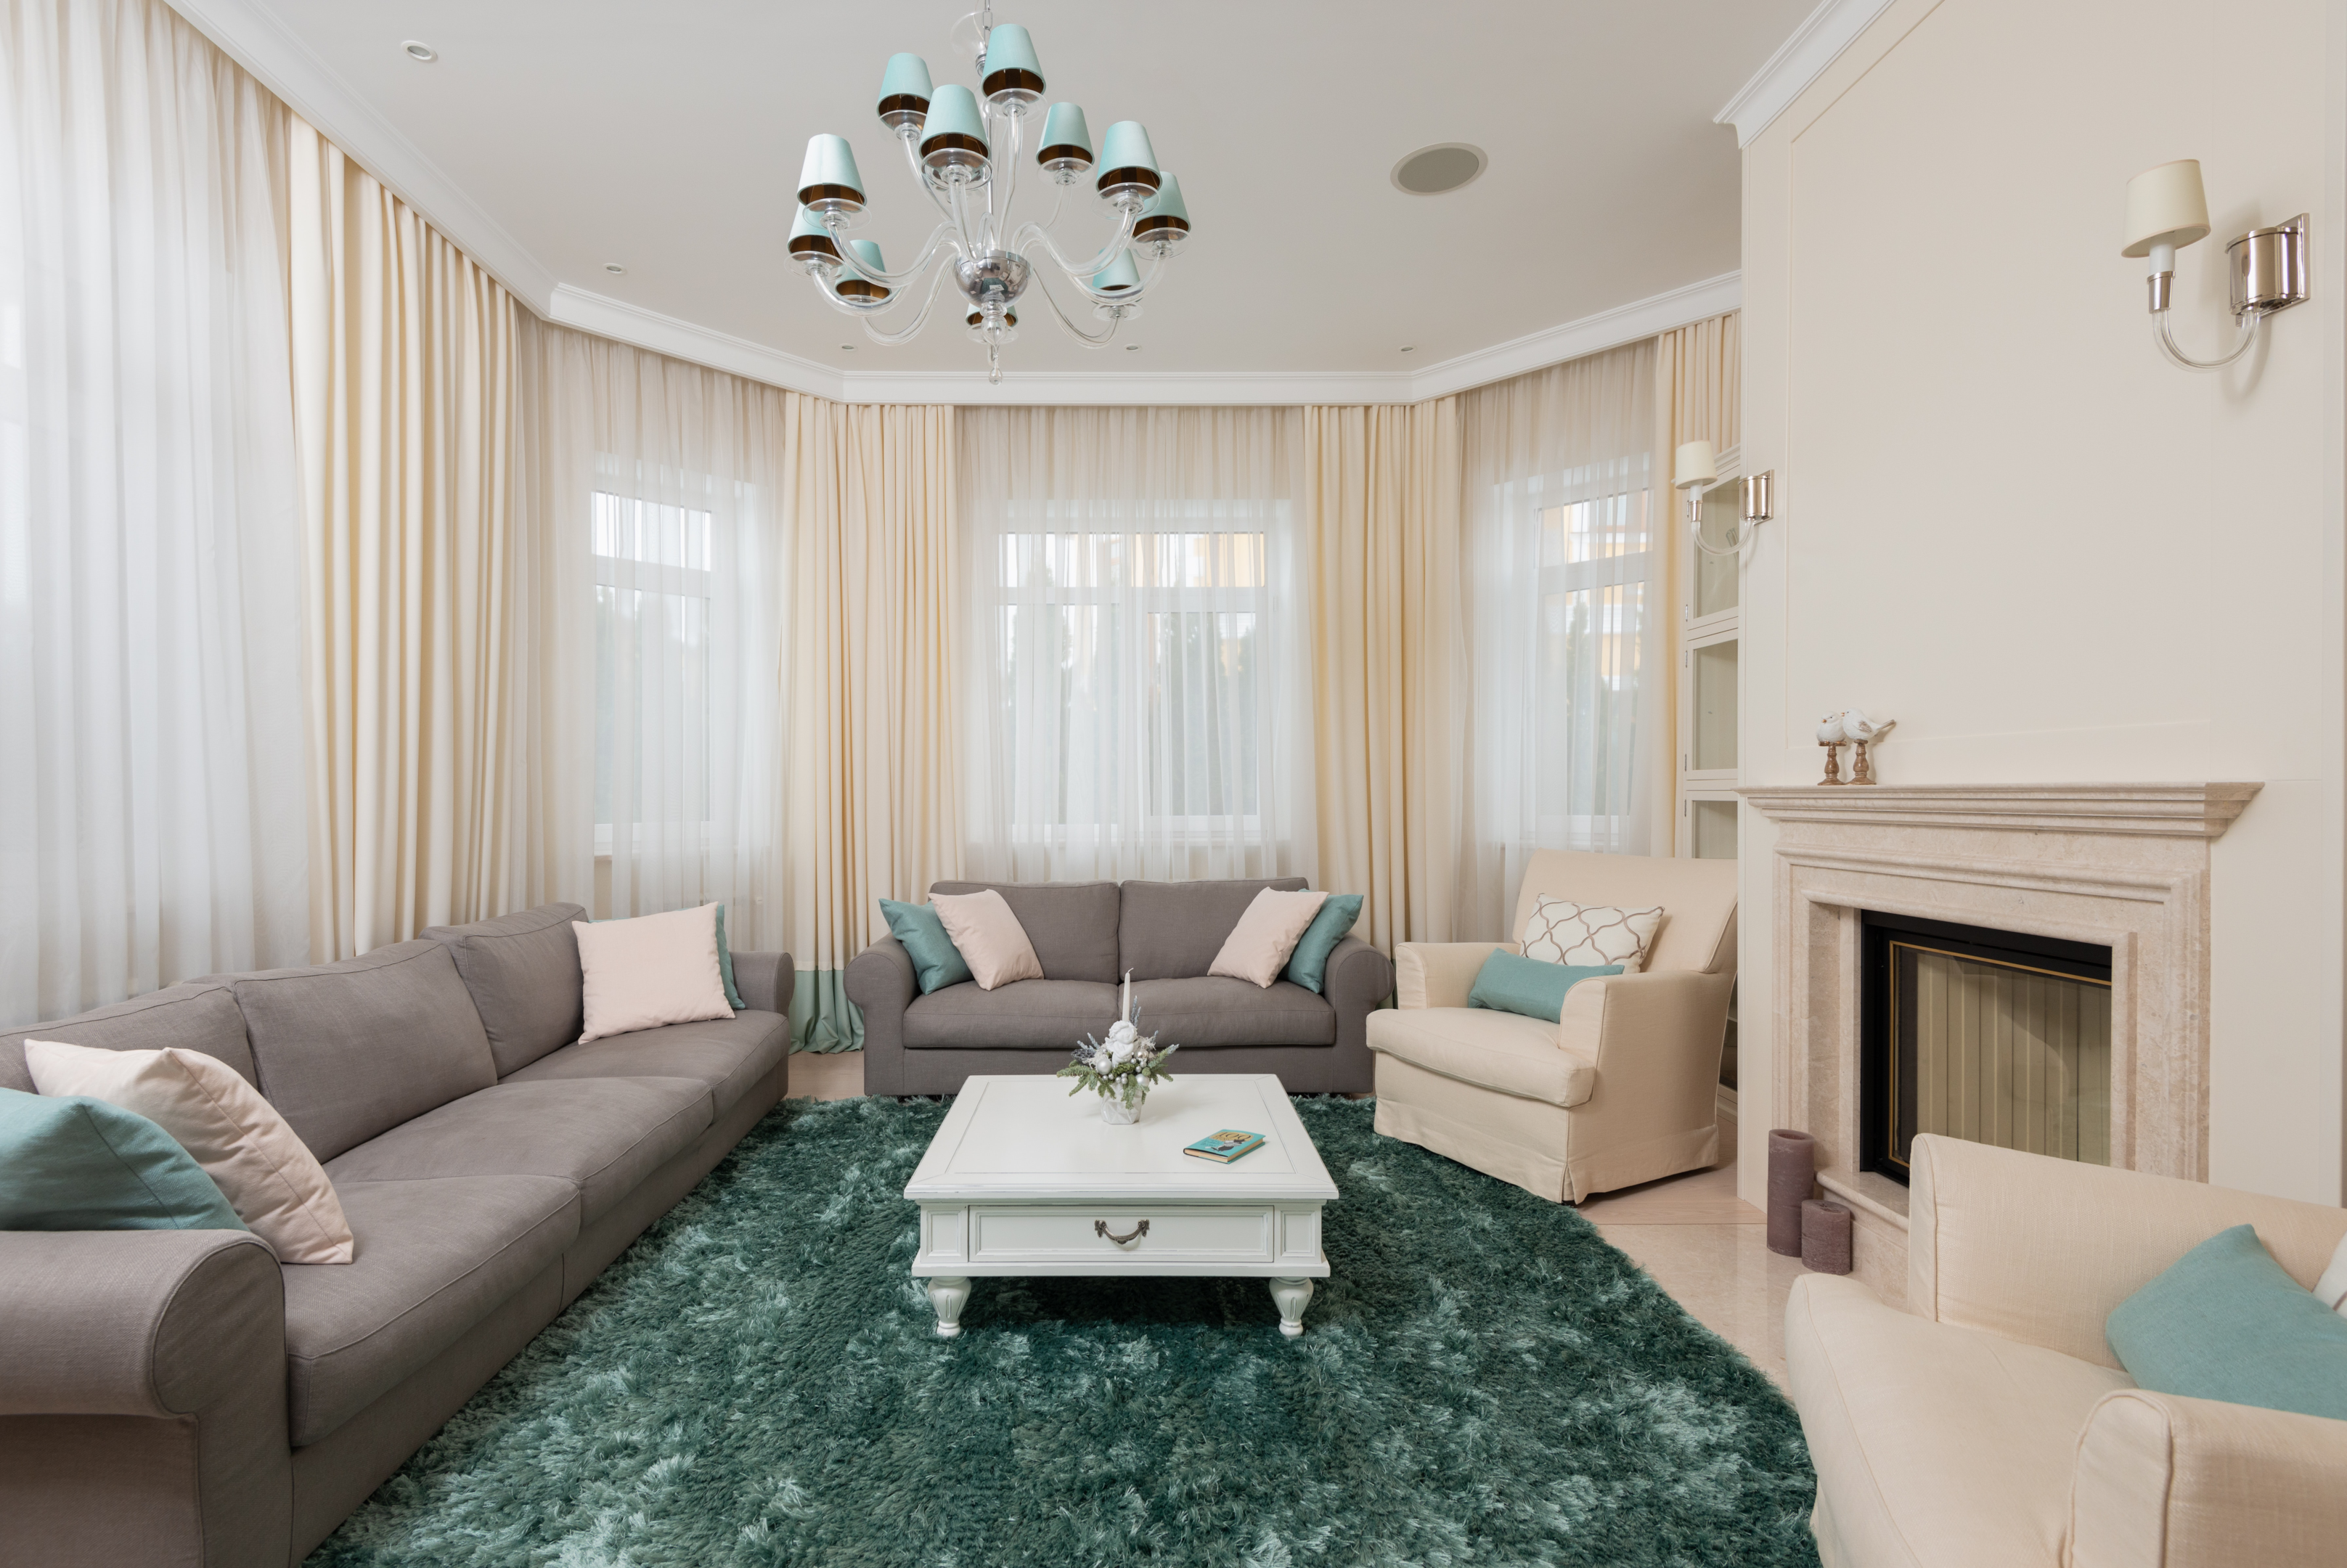 multipurpose furniture apartment living room ideas